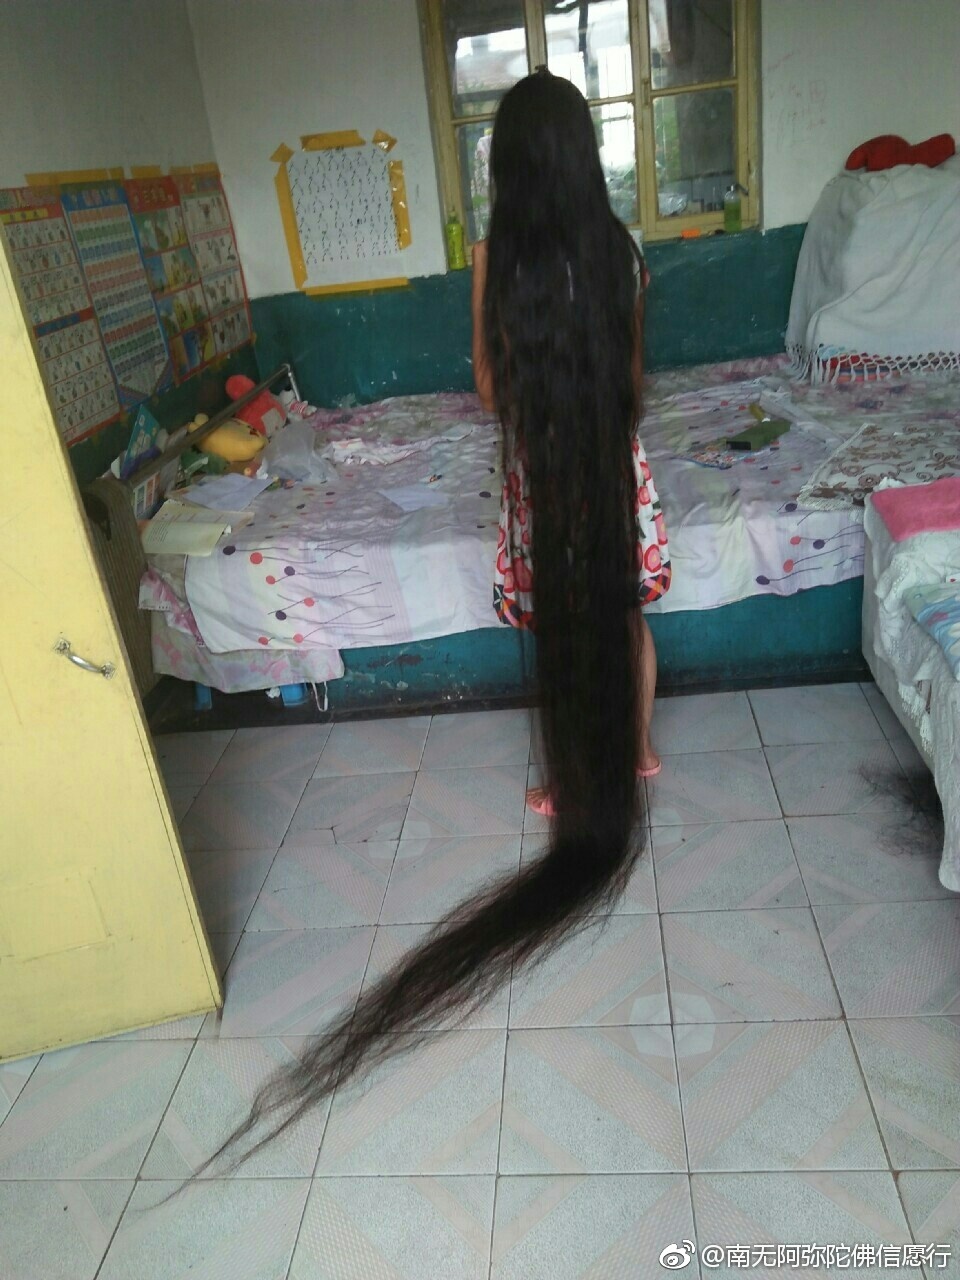 Zhang Xiaoxia has 3 meters long hair